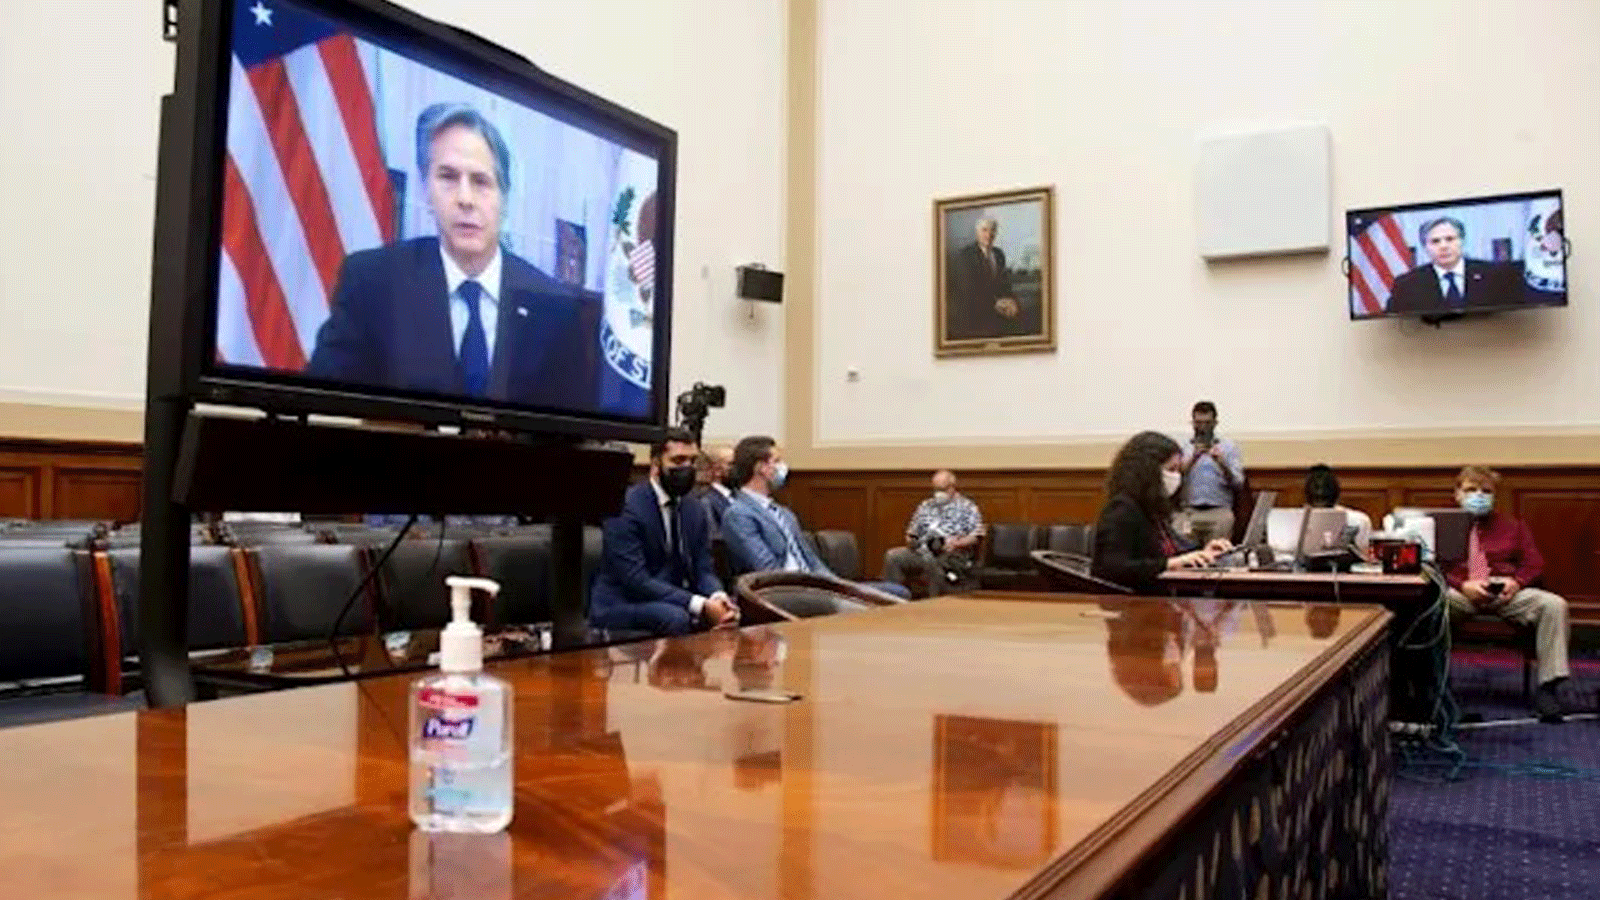 وزير الخارجية الأميركي أنطوني بلينكين على شاشة التلفزيون خلال جلسة استماع للجنة الشؤون الخارجية بمجلس النواب.